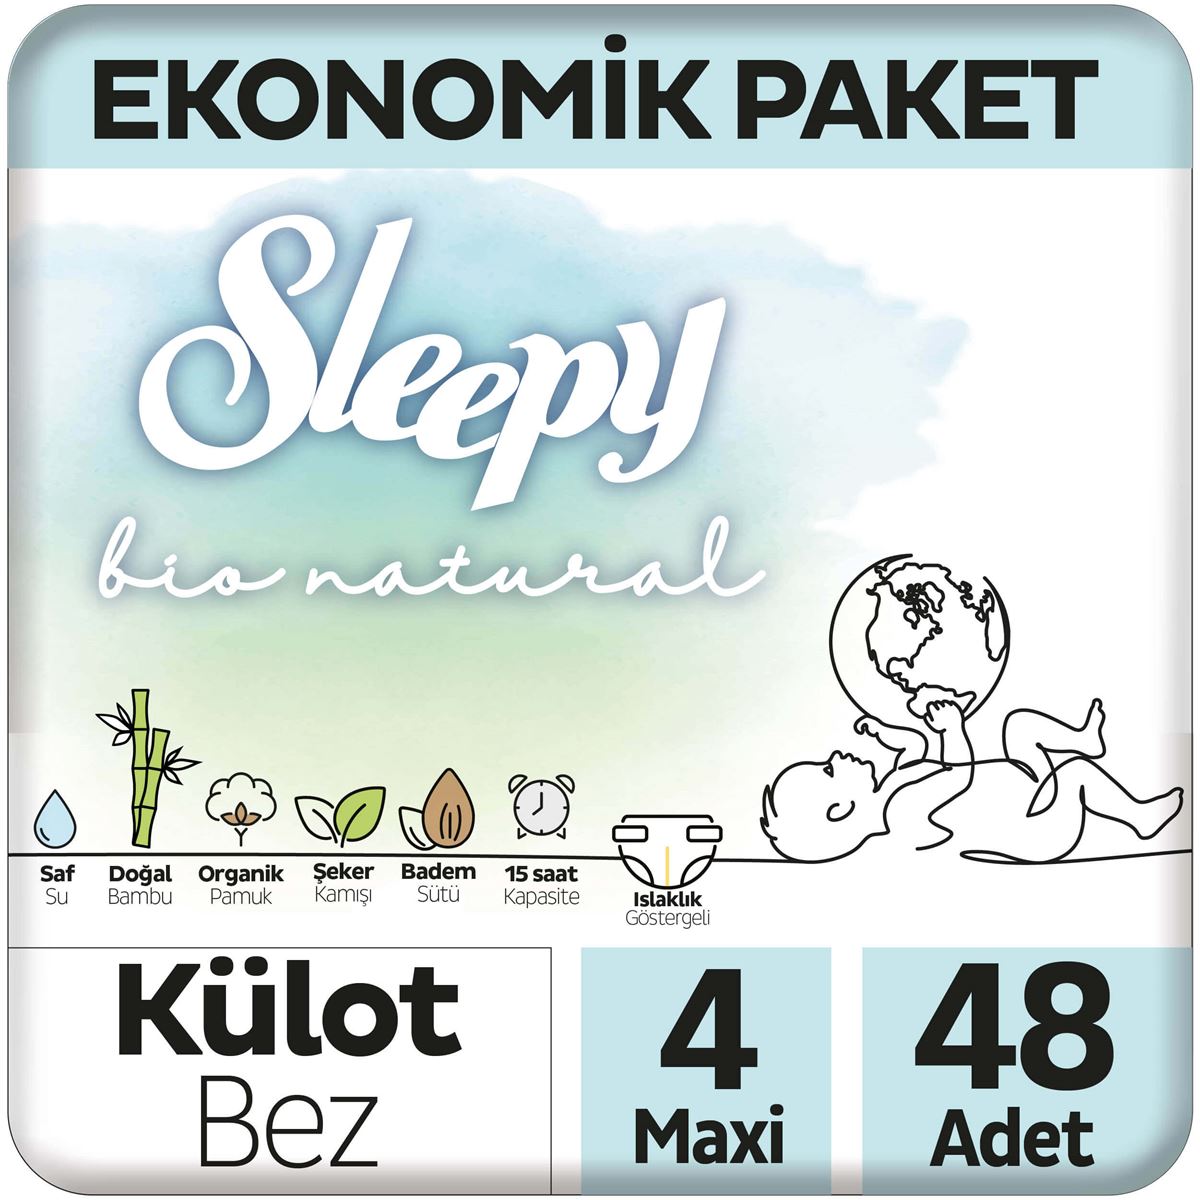 Sleepy Bio Natural Ekonomik Paket Külot Bez 4 Numara Maxi 48 Adet